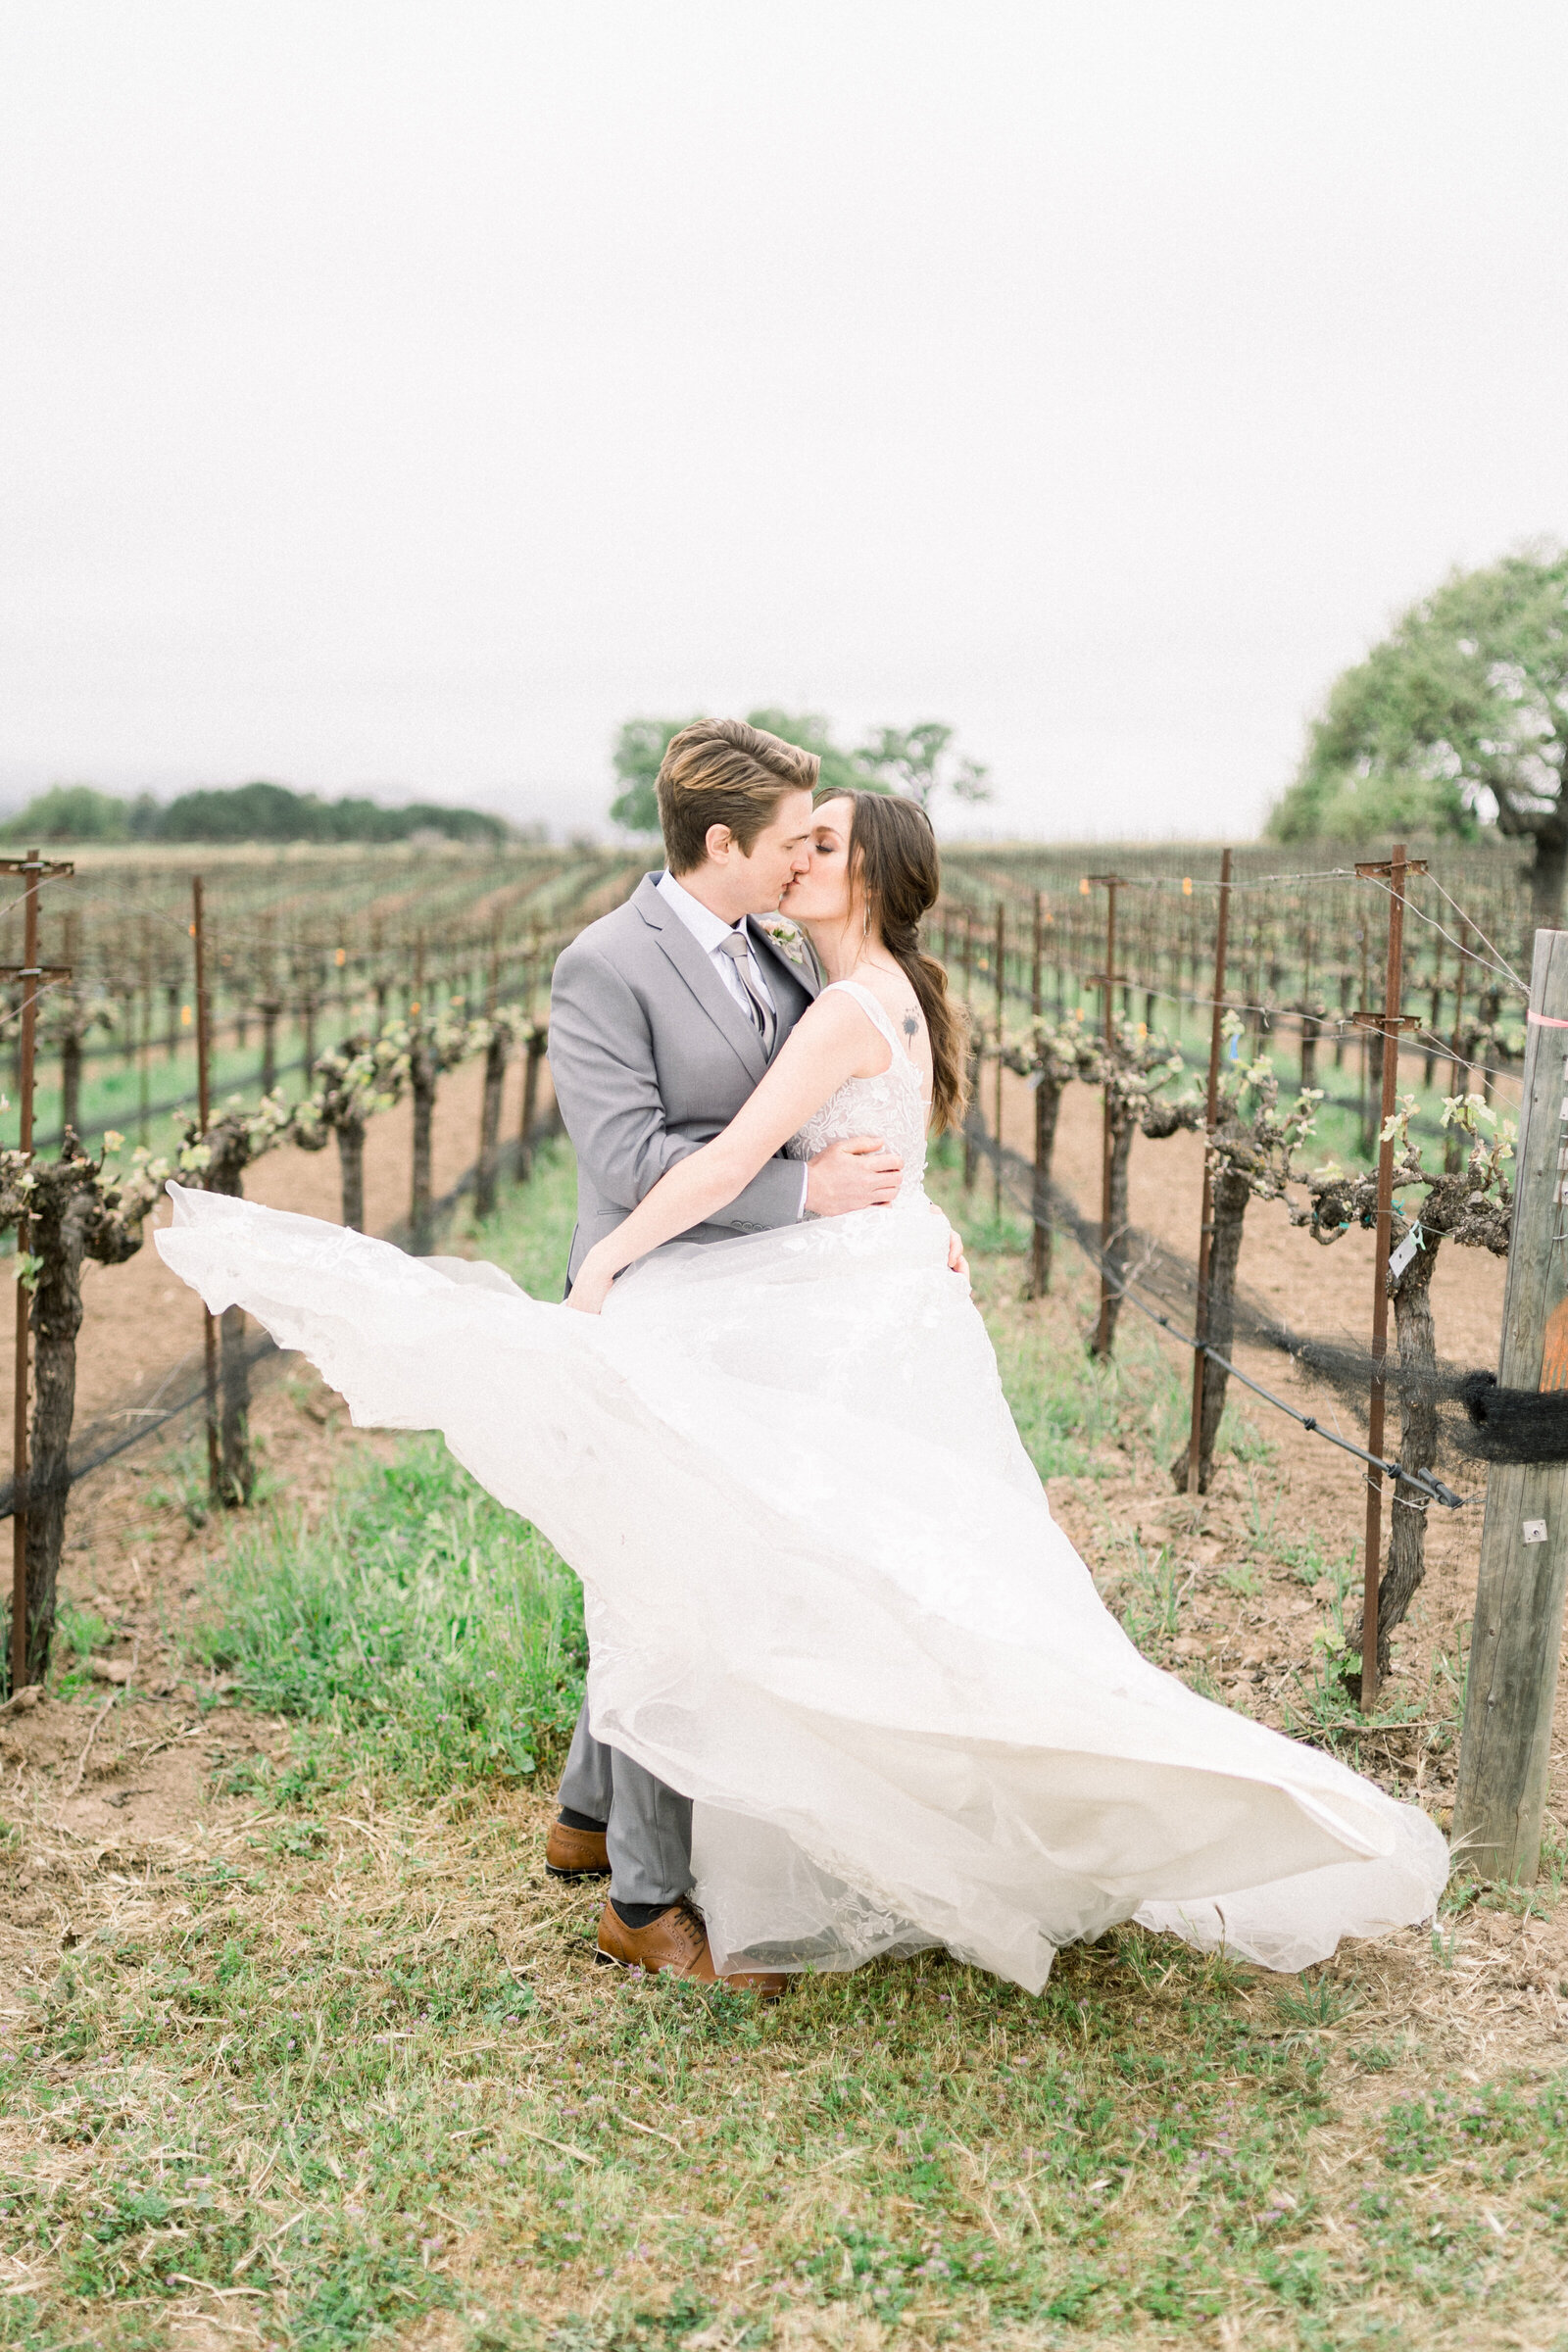 Bride and groom kiss in vineyard at their Sunstone Winery wedding in Santa Ynez, CA